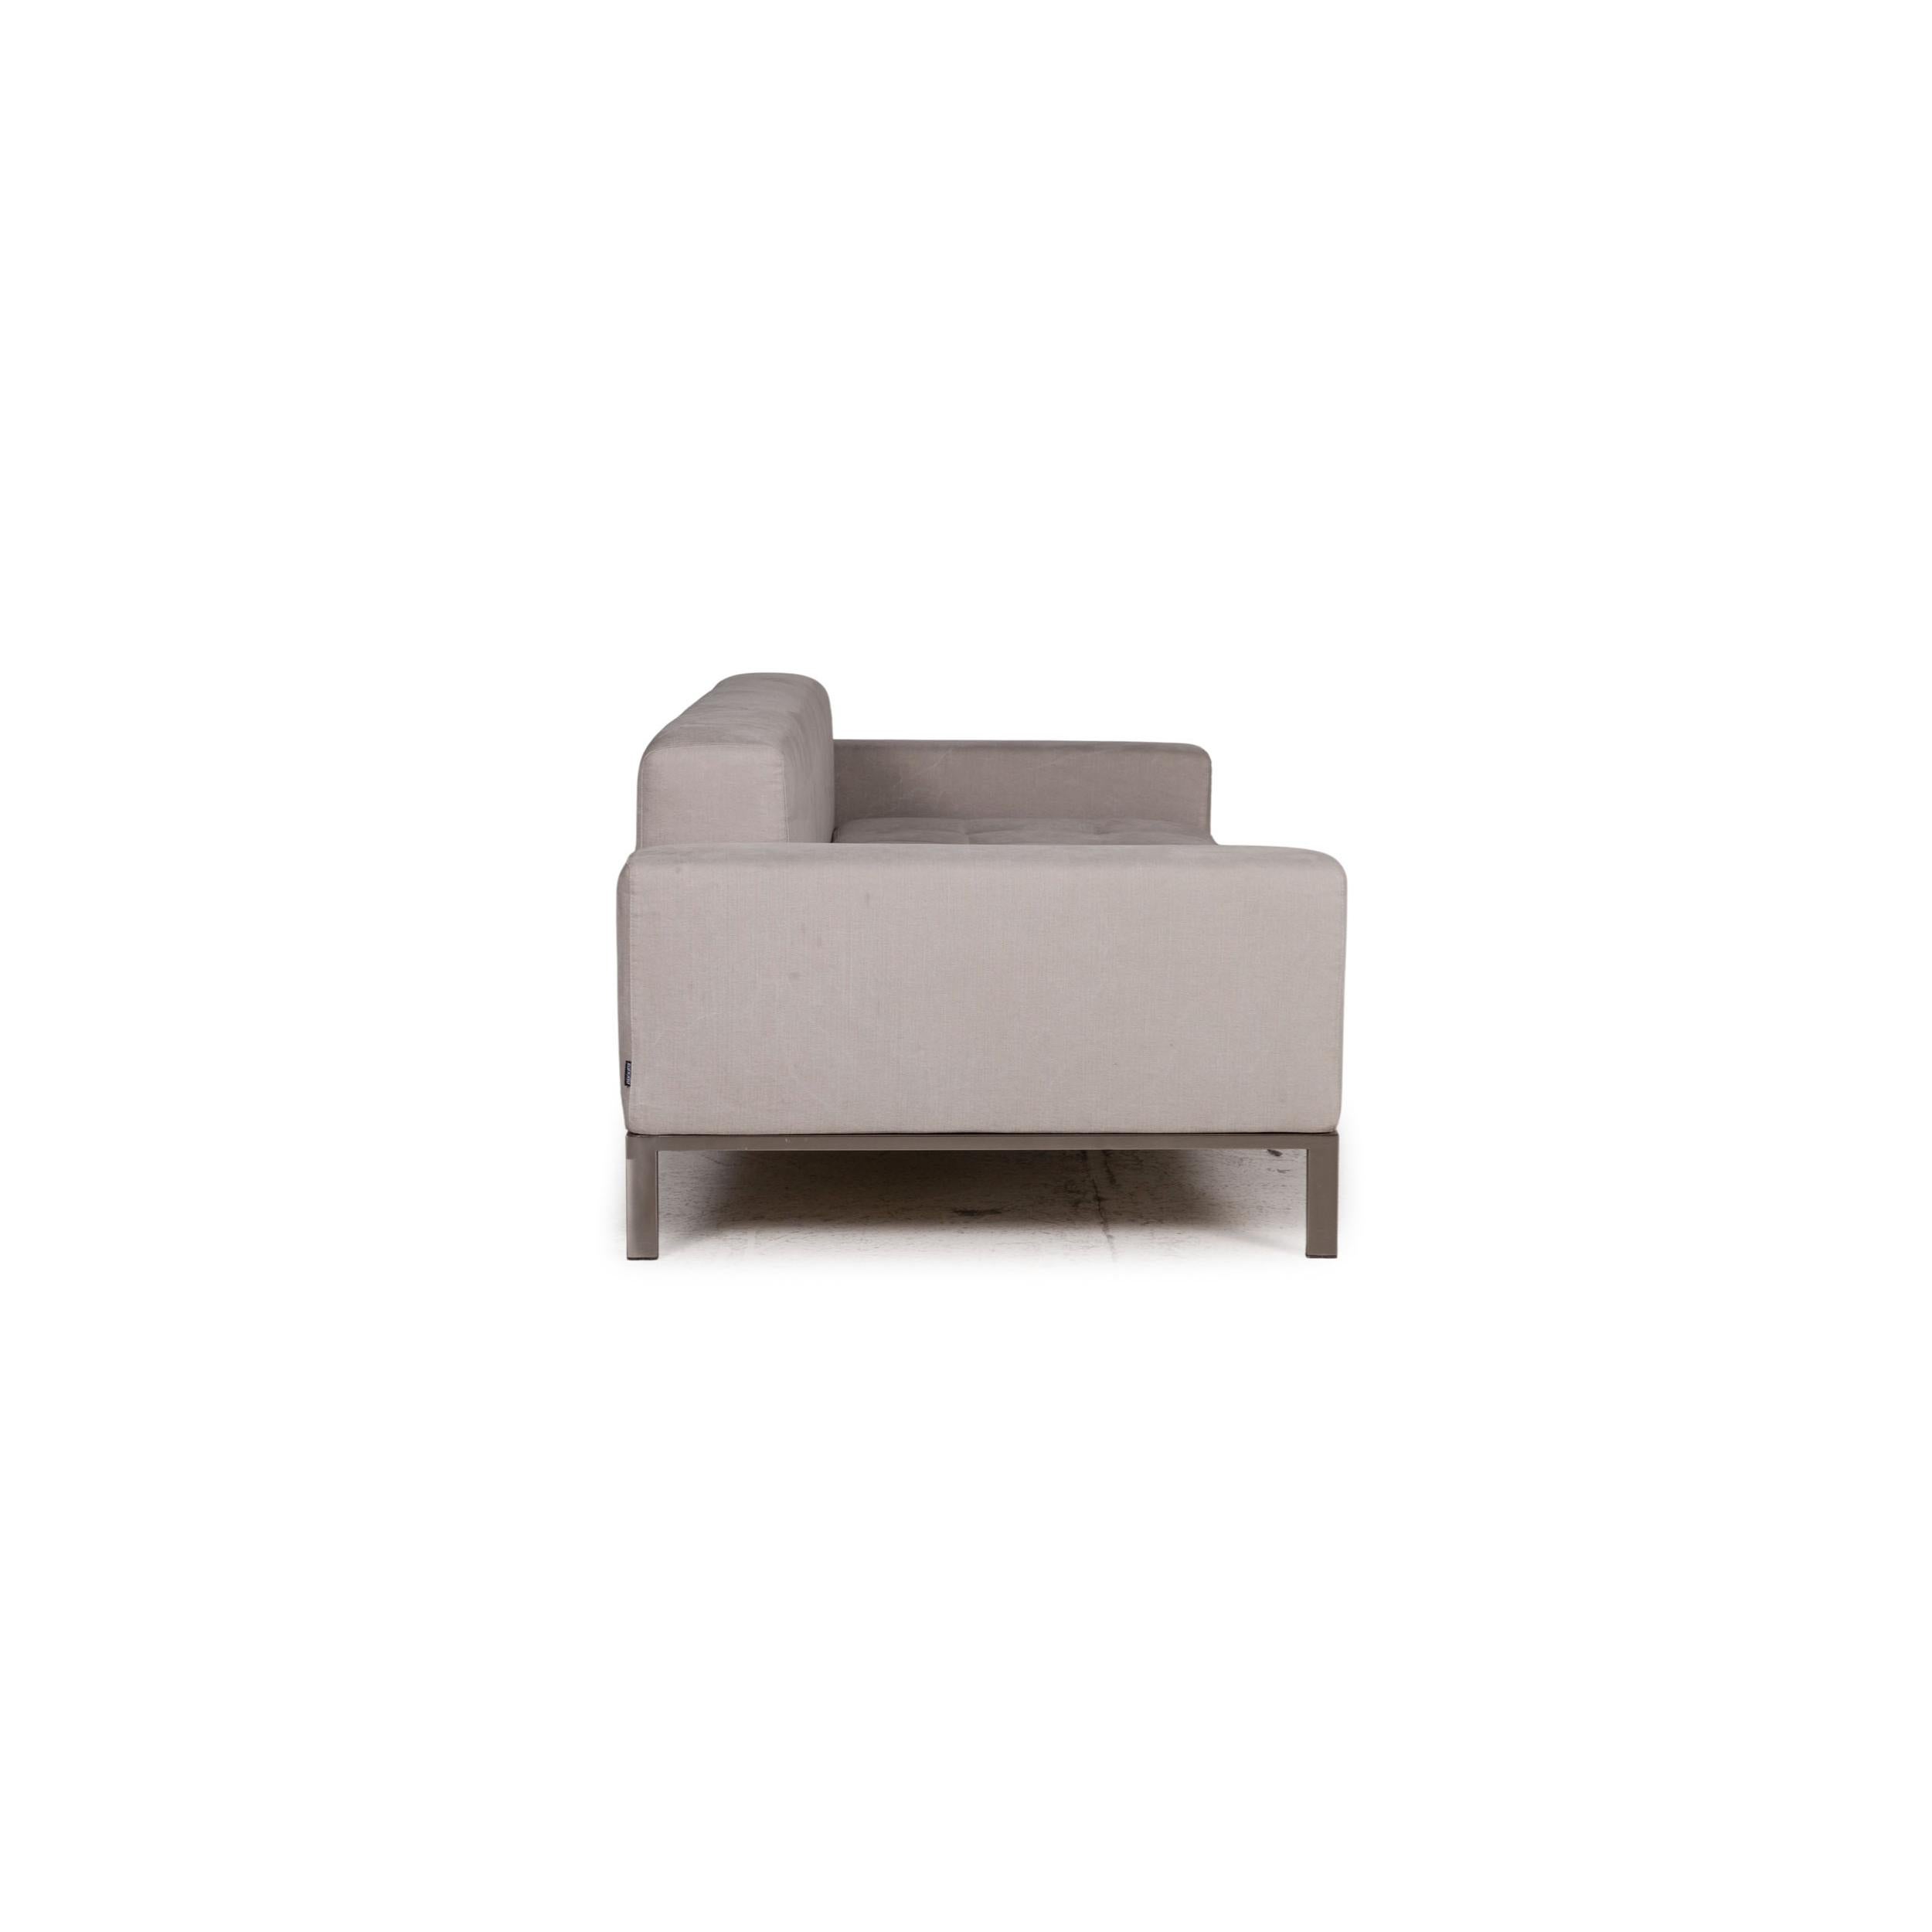 Contemporary Zanotta Alfa Fabric Sofa Gray Two-Seater Couch For Sale